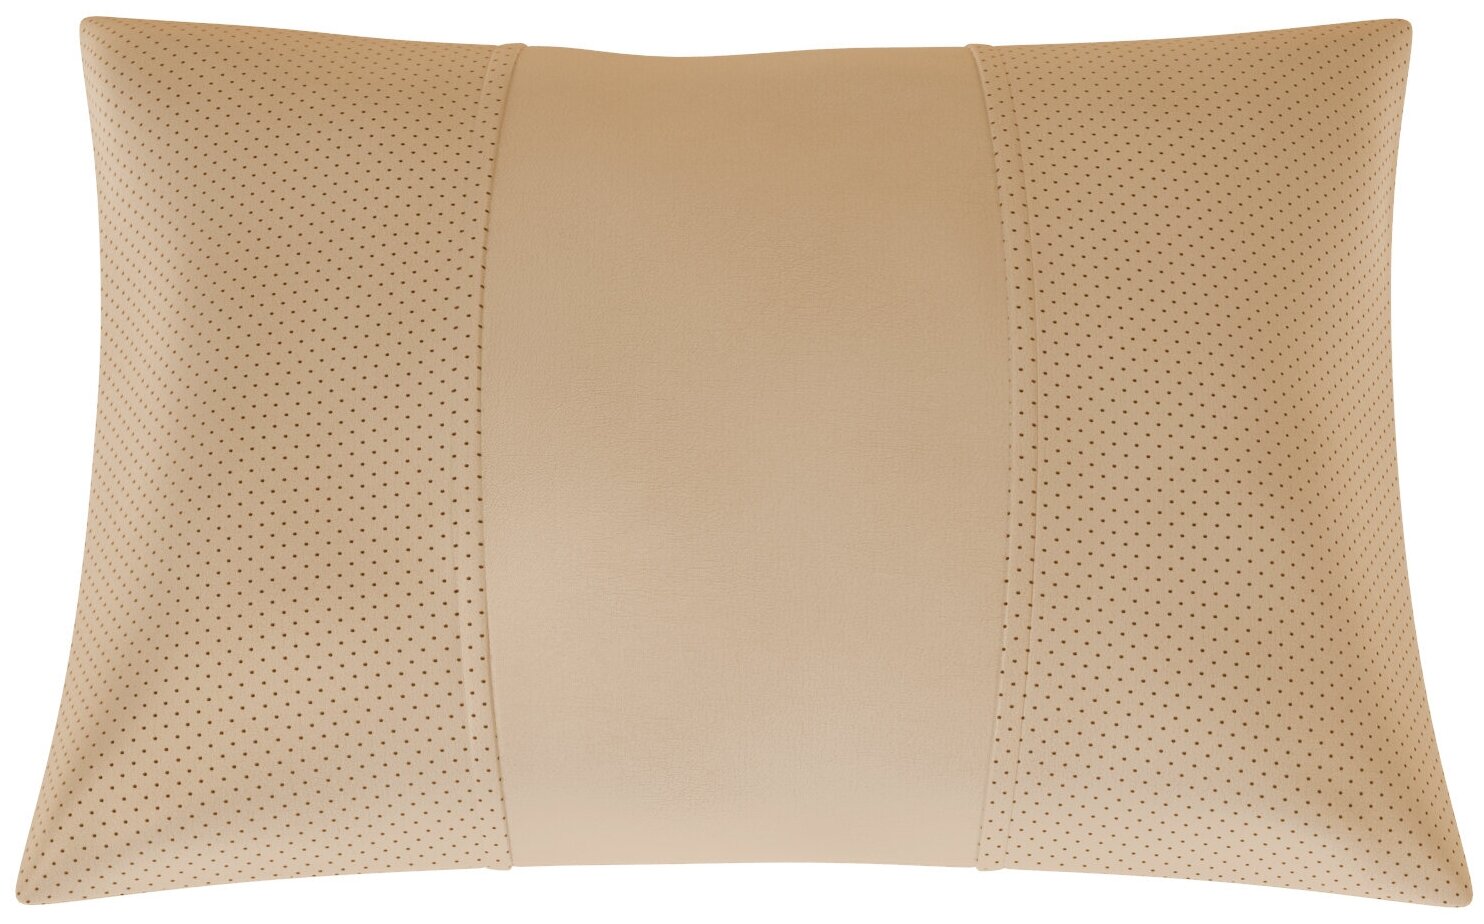 Автомобильная подушка для Citroen C5 2 (Ситроен С5 2). Экокожа. Середина: бежевая гладкая экокожа. Боковины: бежевая экокожа с перфорацией. 1 шт.